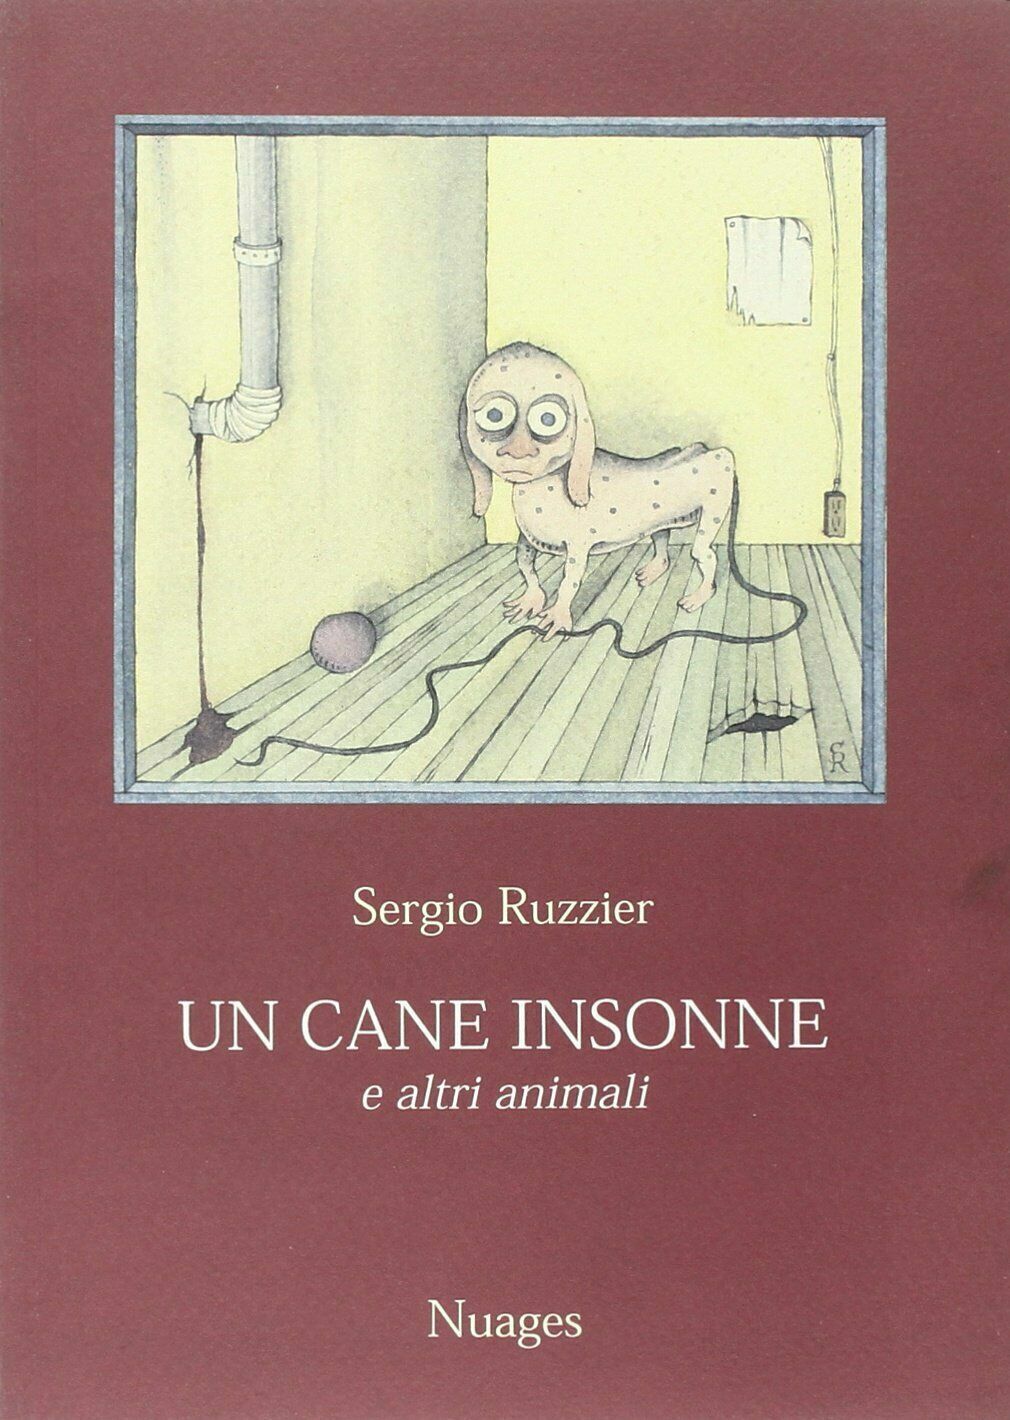 Un cane insonne e altri animali di Sergio Ruzzier,  1999,  Nuages